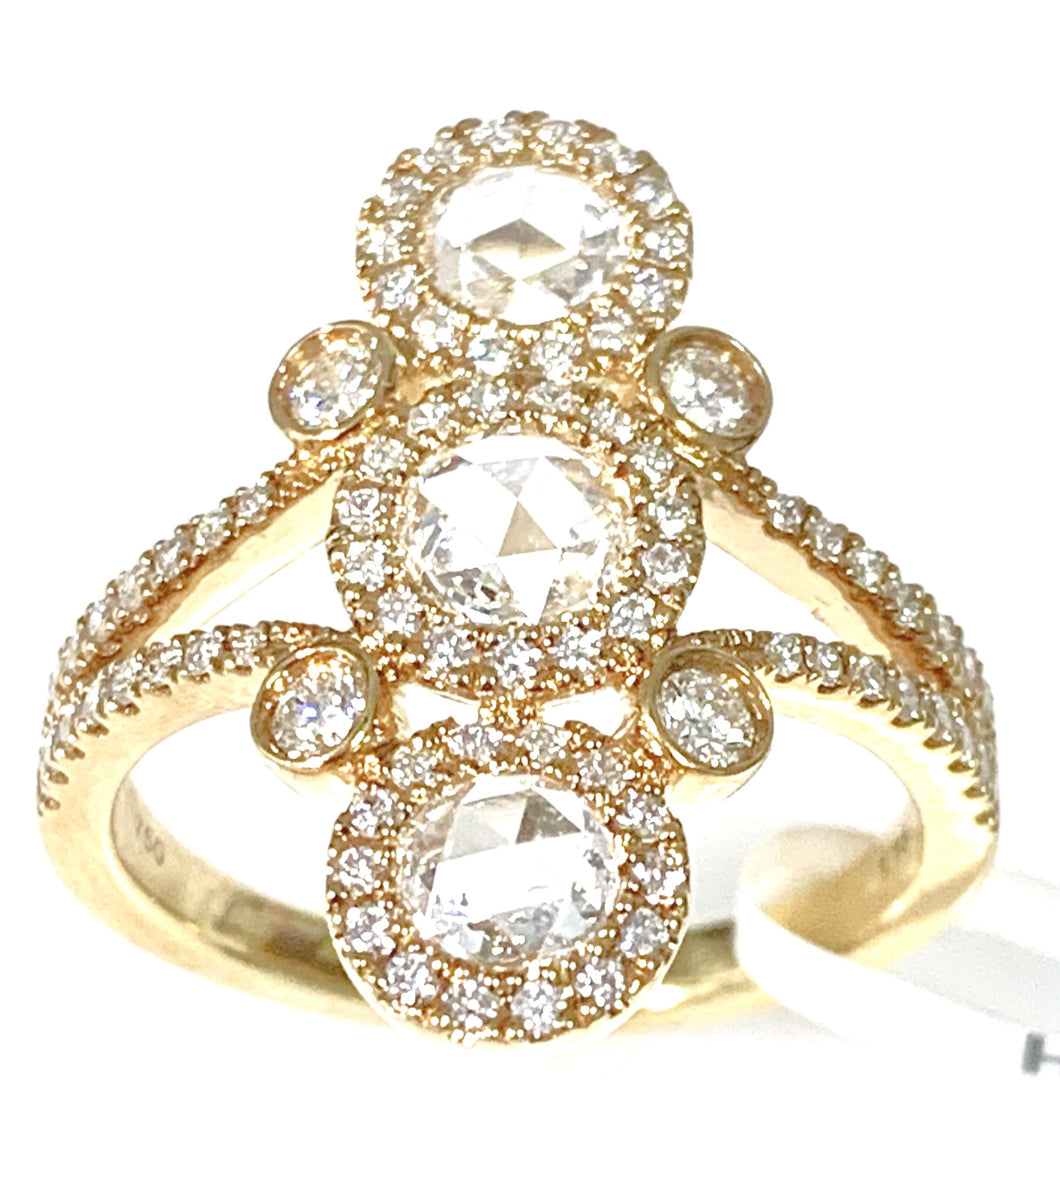 18 Karat Yellow Gold Rose Cut Diamond Fashion Ring